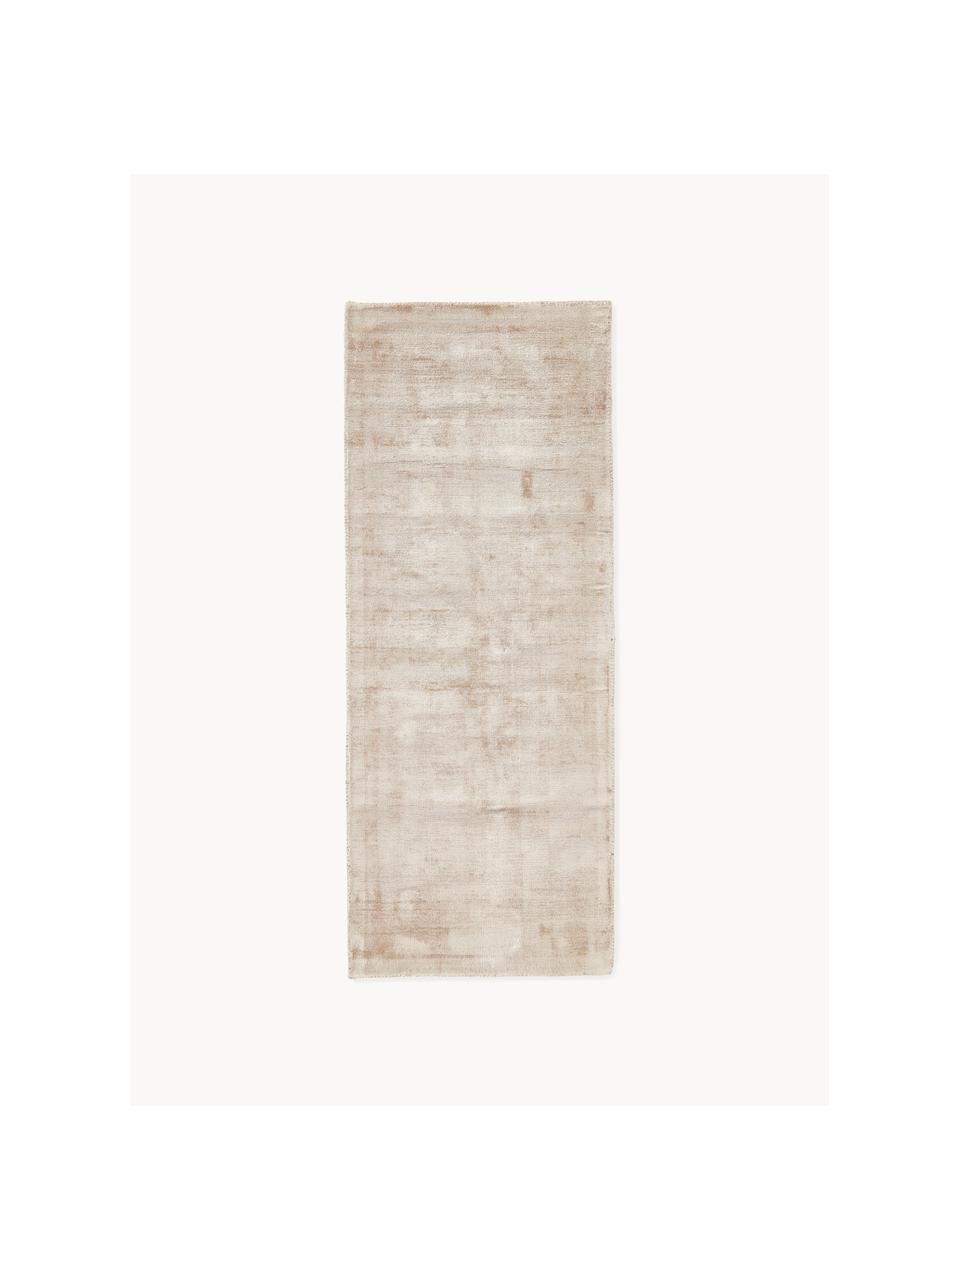 Passatoia in viscosa Jane, Retro: 100% cotone Il materiale , Beige chiaro, Larg. 80 x Lung. 300 cm